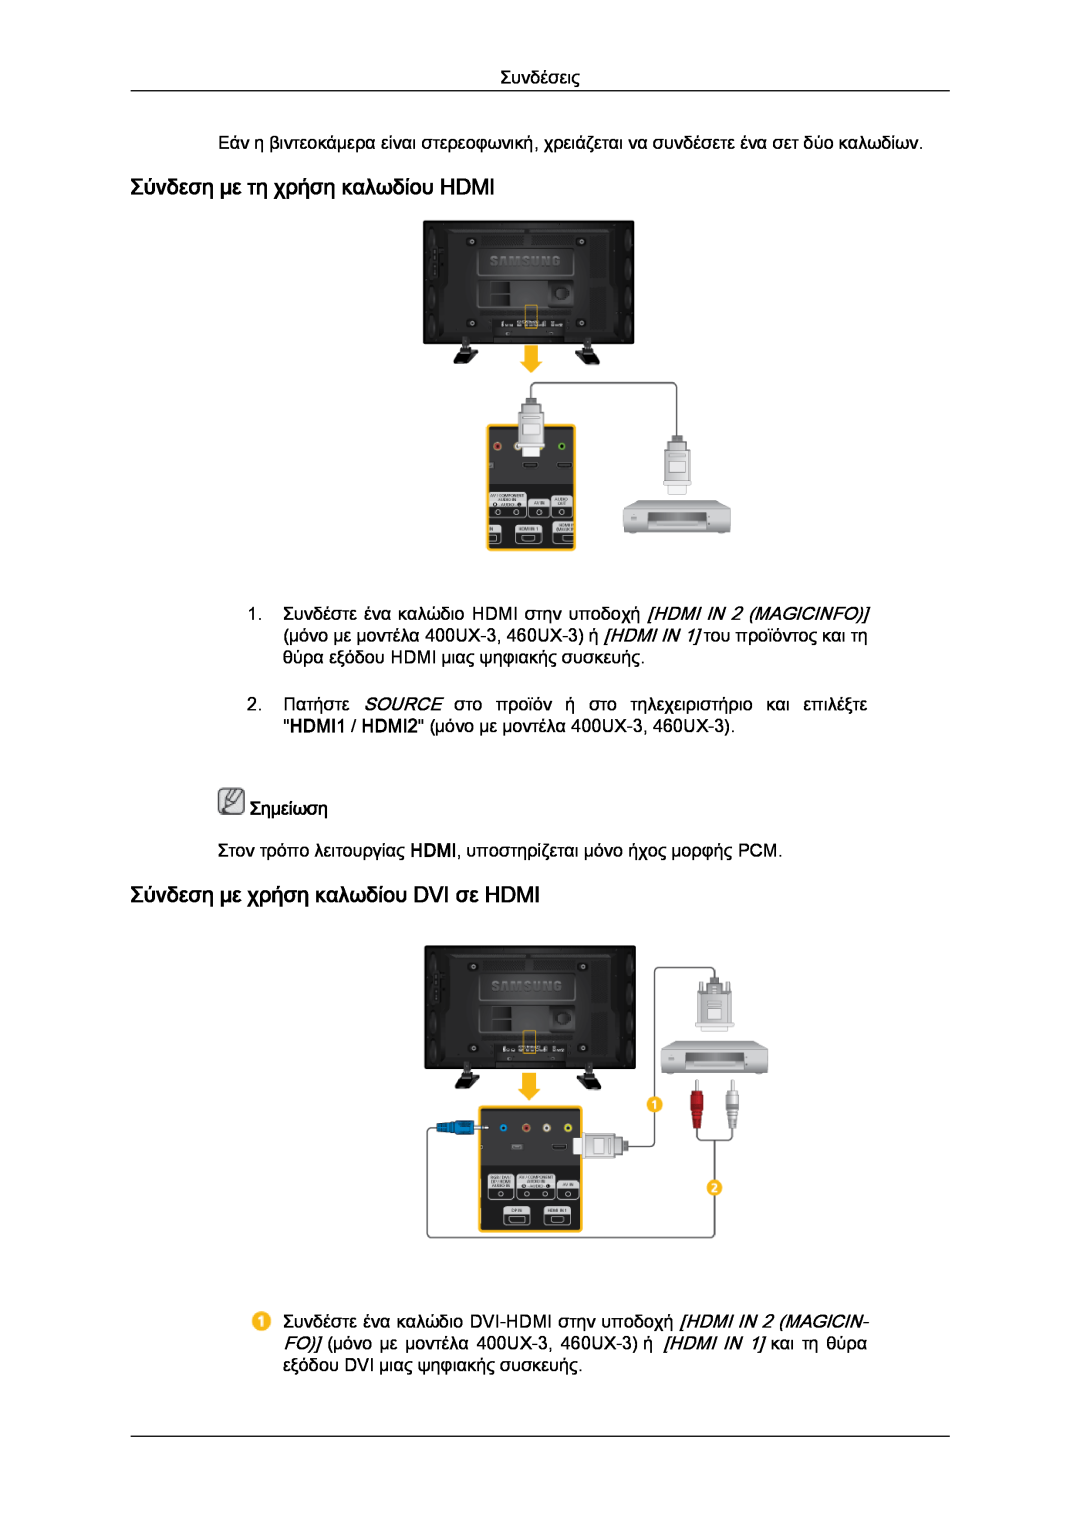 Samsung LH46GWPLBC/EN, LH40GWTLBC/EN Σύνδεση με τη χρήση καλωδίου HDMI, Σύνδεση με χρήση καλωδίου DVI σε HDMI, Σημείωση 